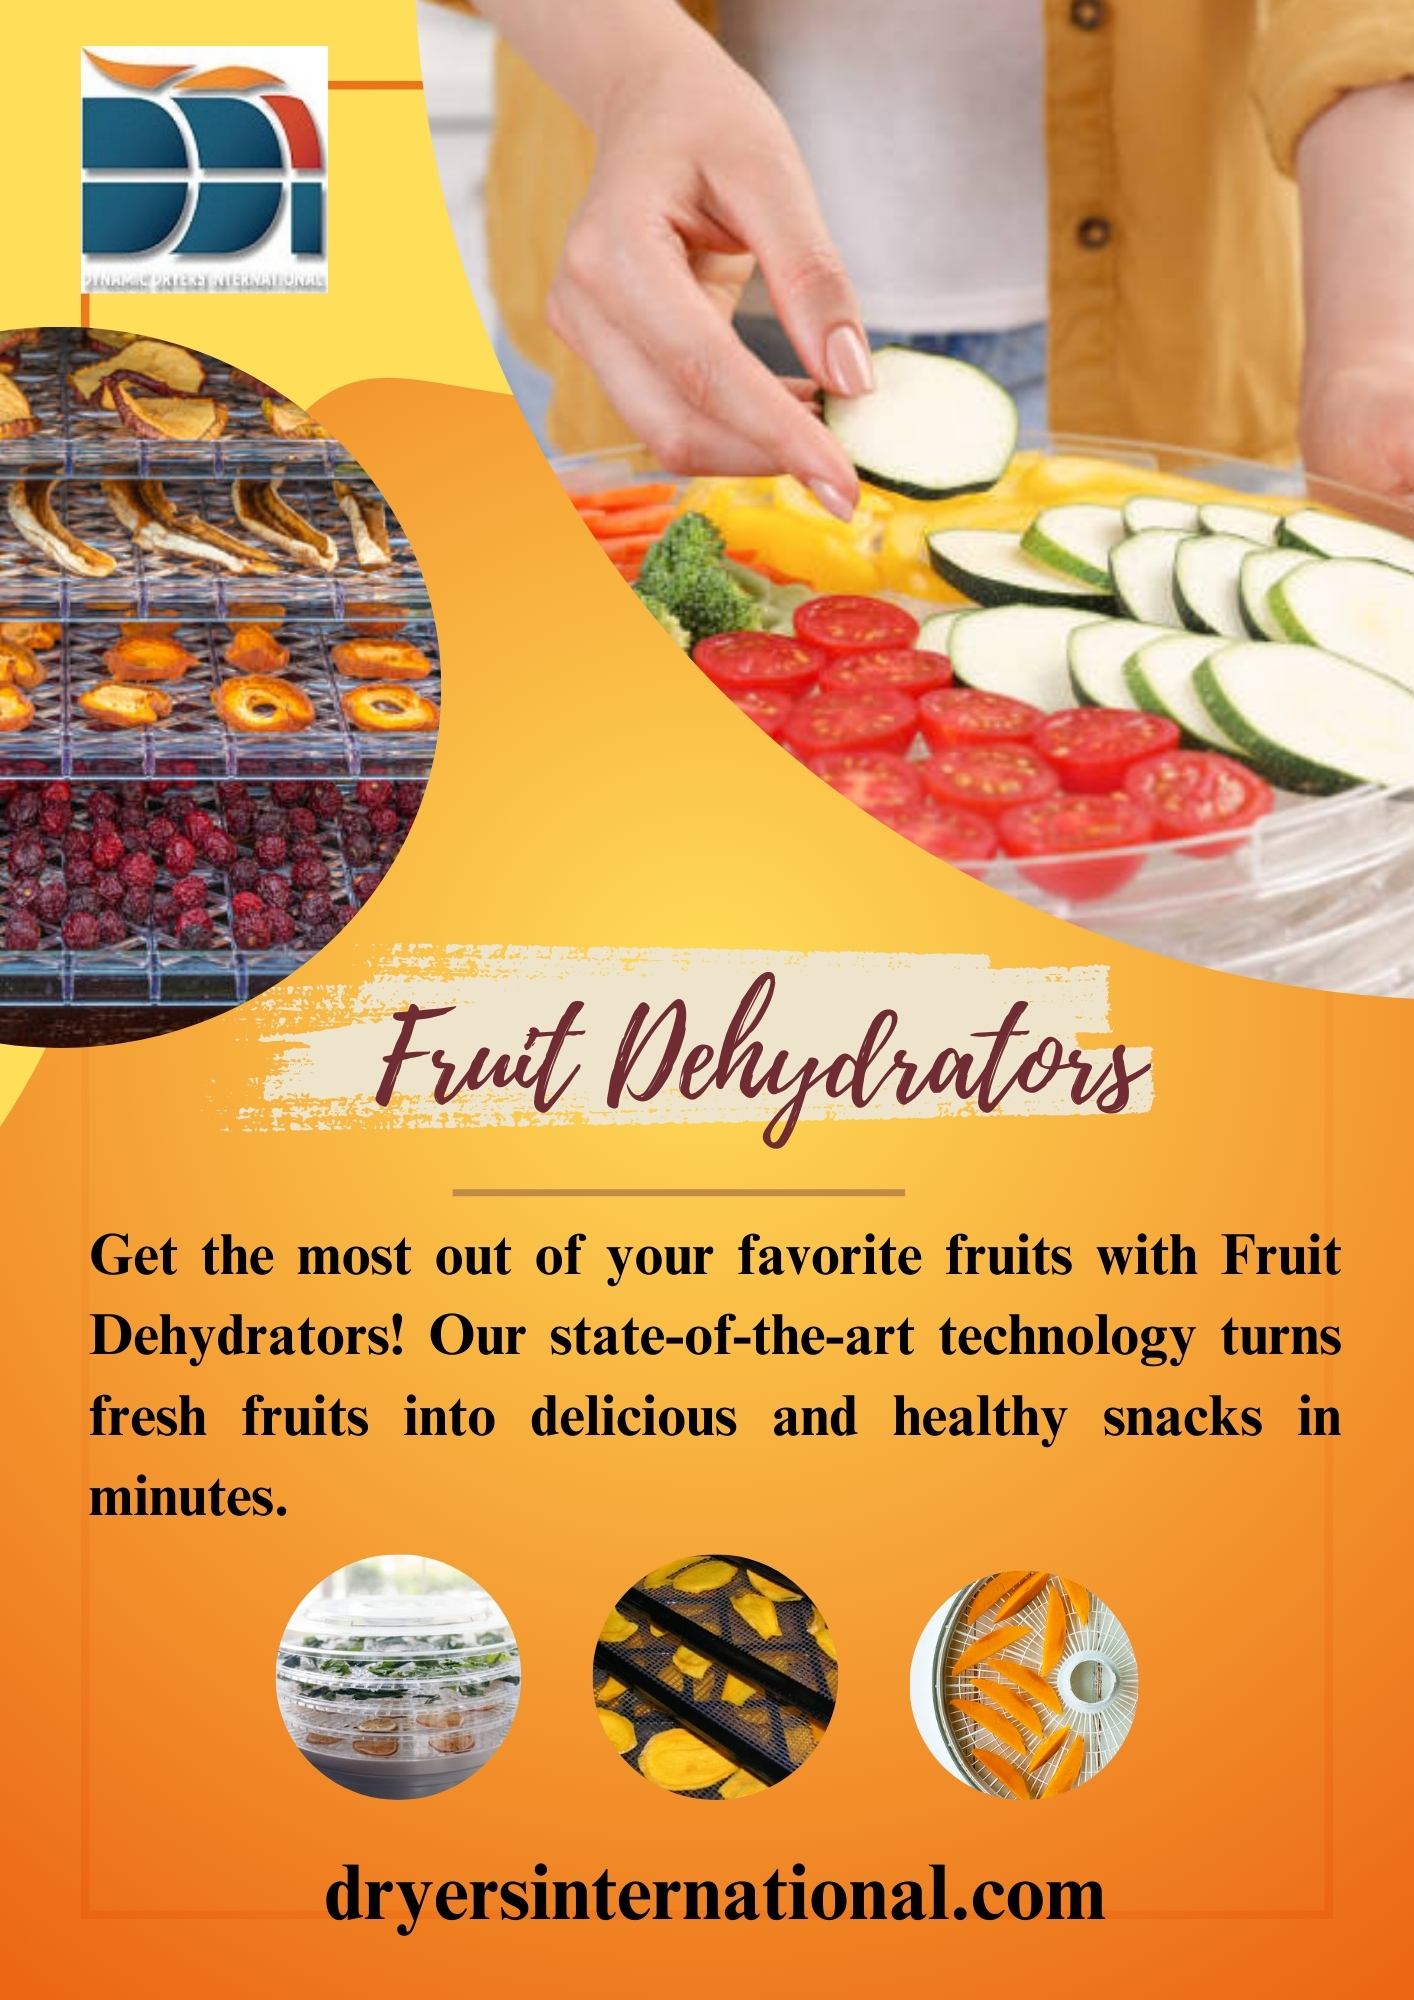 Fruit Dehydrators Blank Meme Template